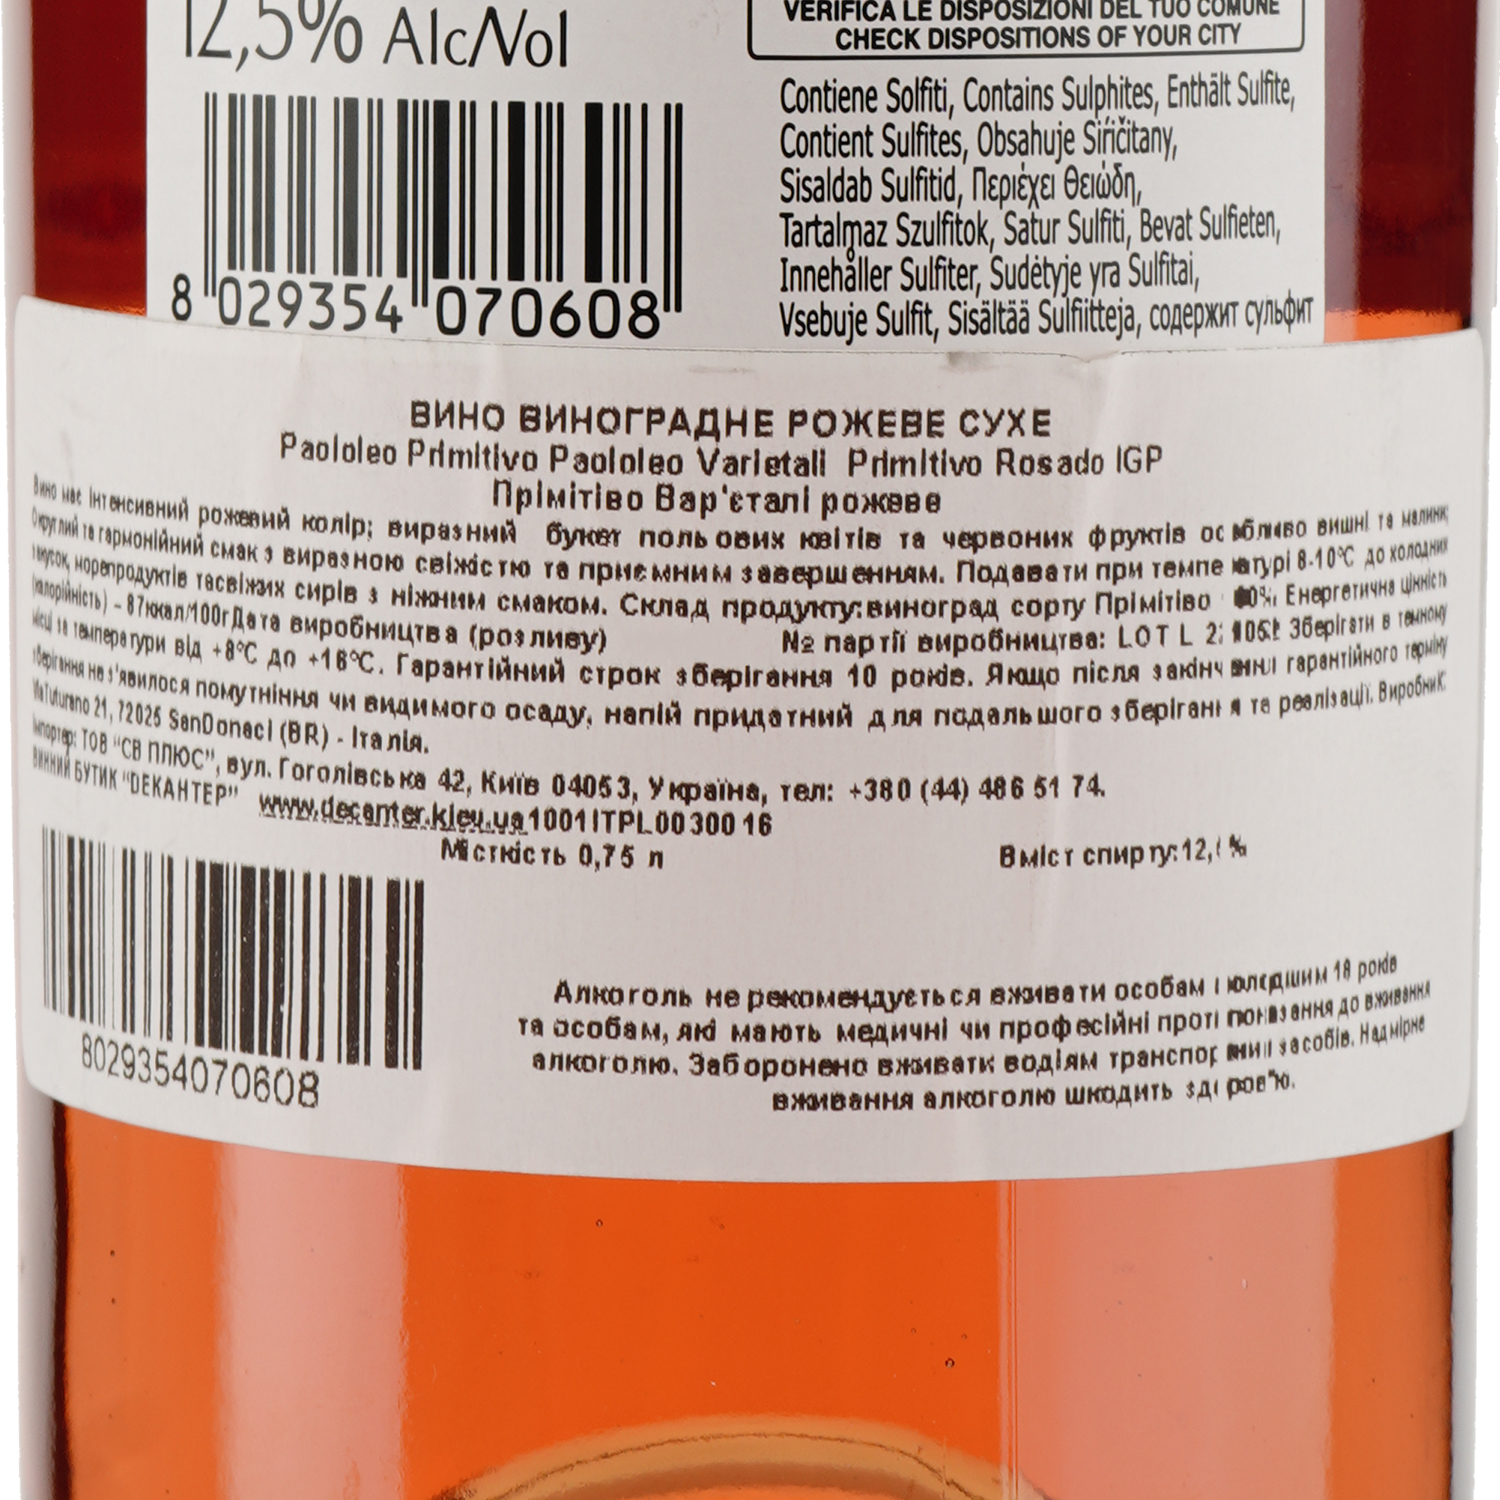 Вино Paololeo Primitivo Rosado Varietali IGP, розовое, сухое, 0,75 л - фото 3